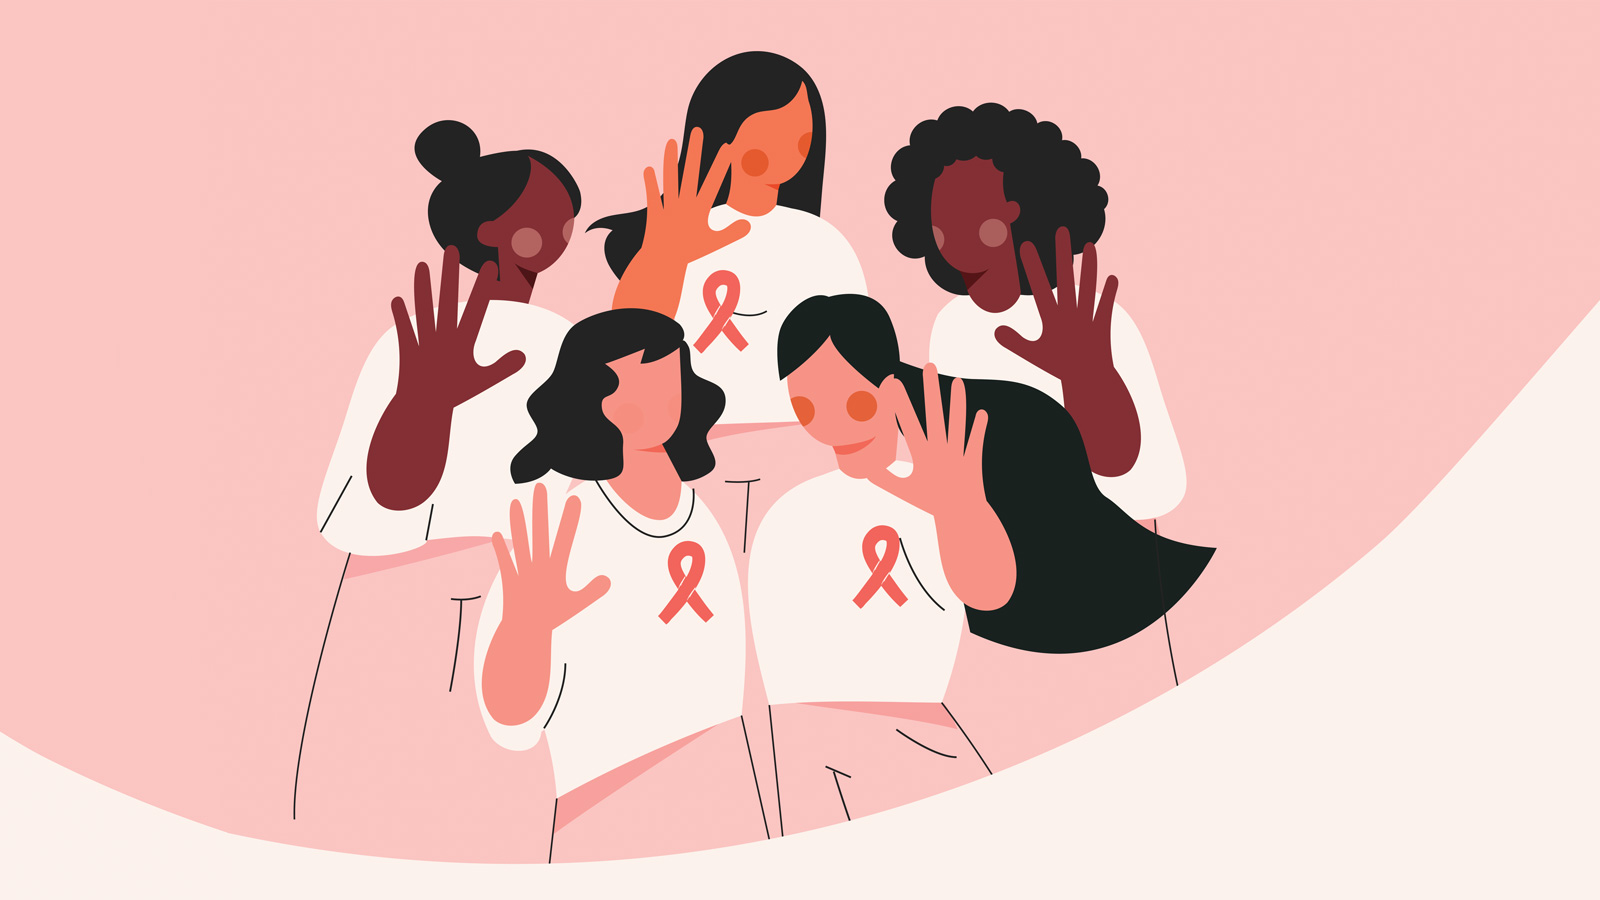 Mamotest: IA atua no combate ao câncer de mama na América Latina